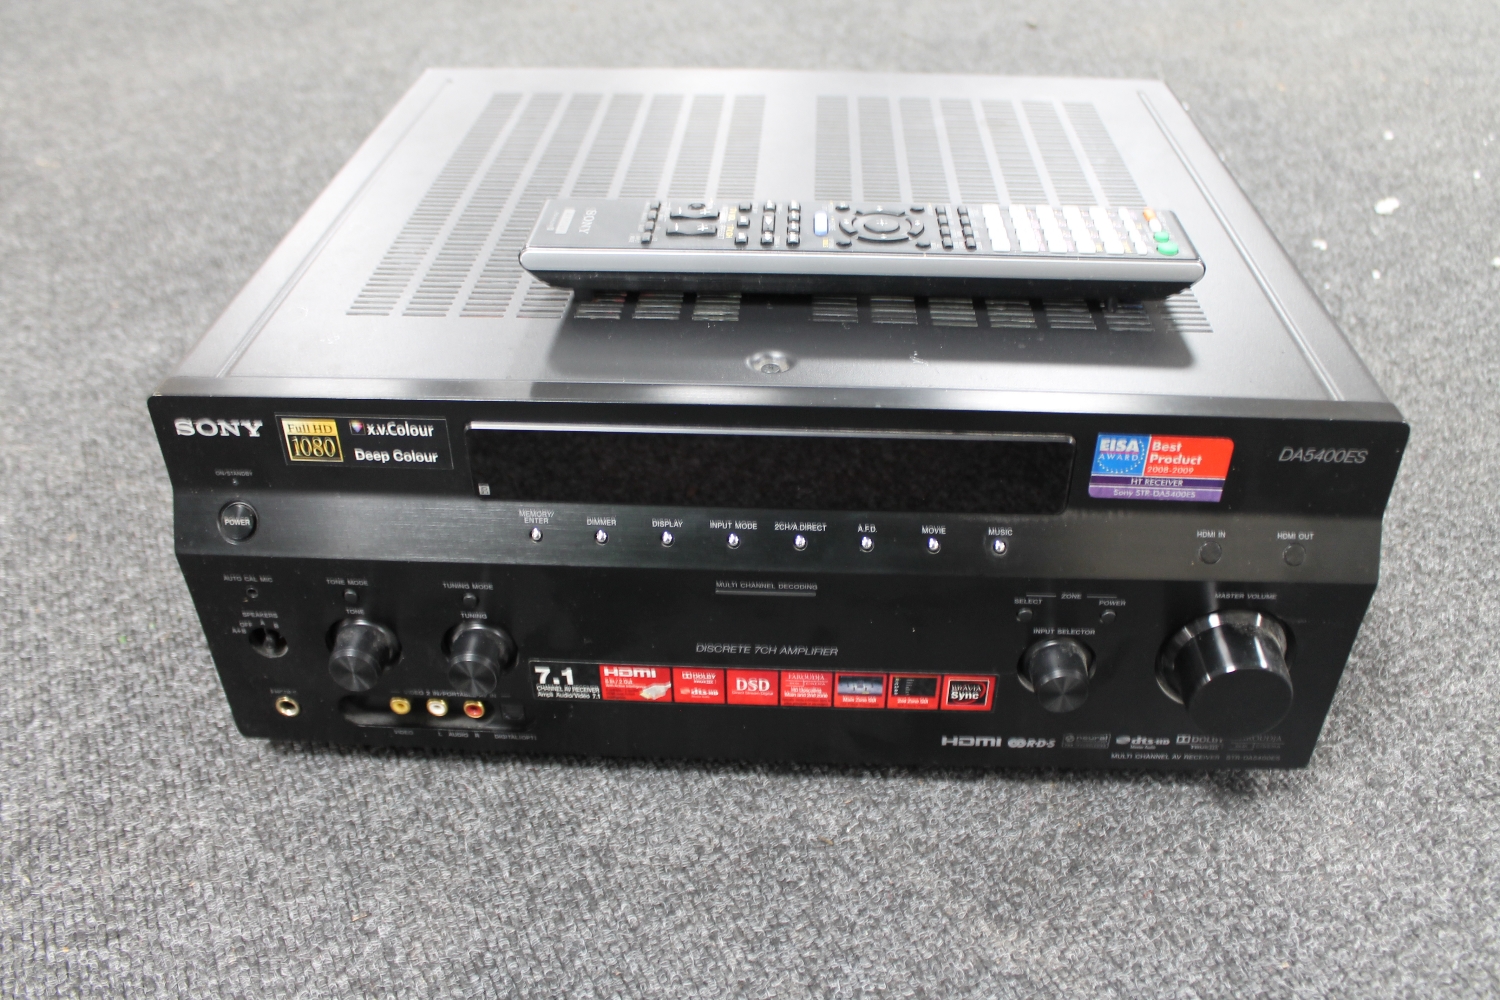 A Sony Discrete 7CH Amplifier DA5400ES with remote